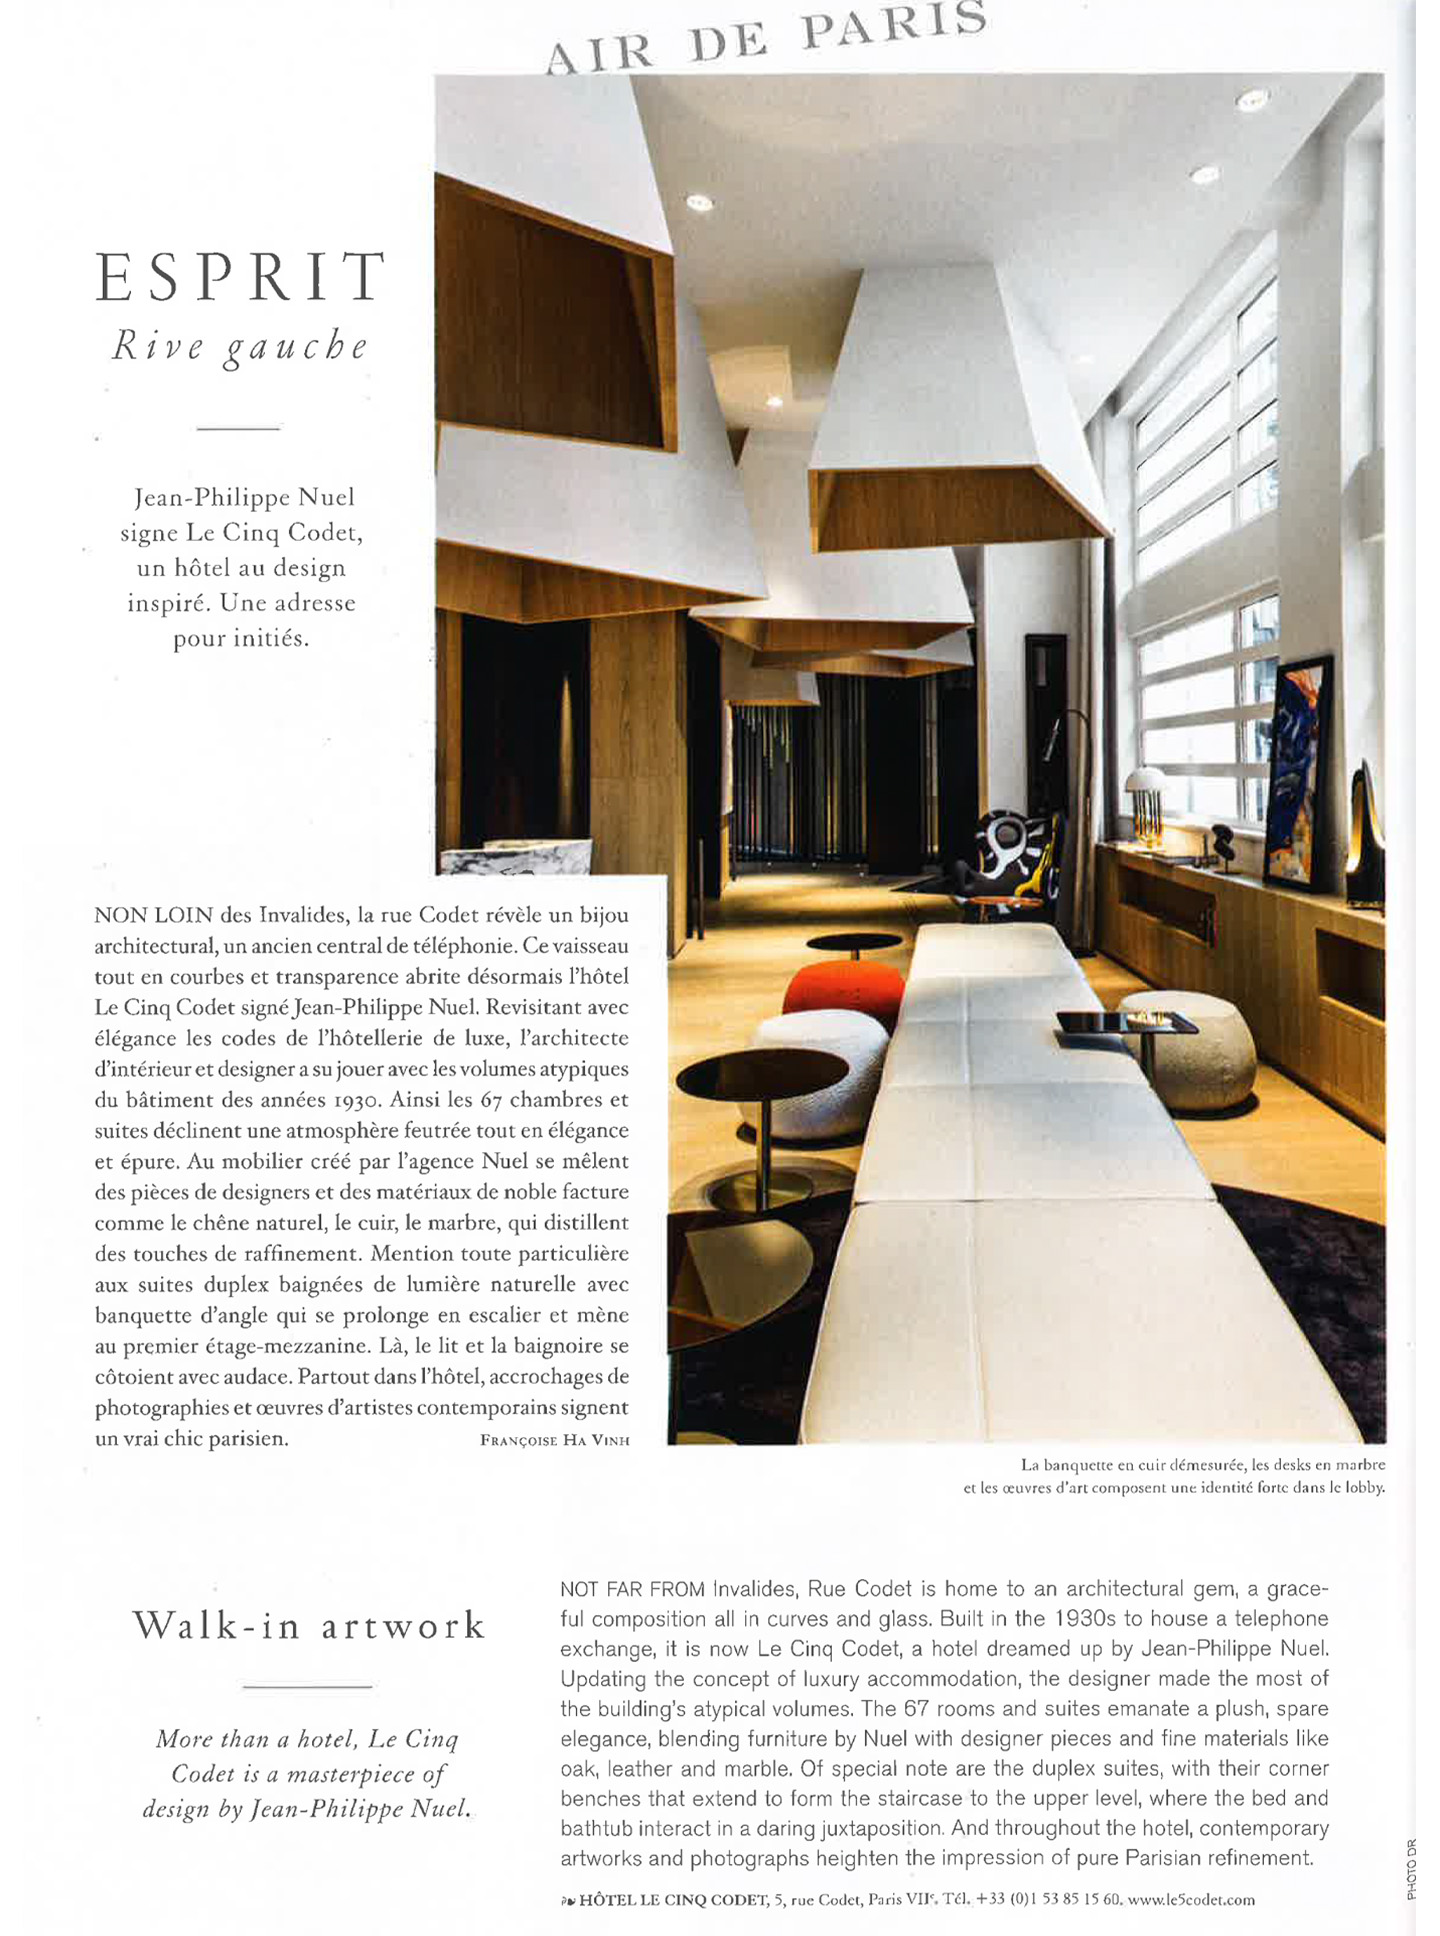 article sur l'hôtel le cinq codet, hotel de luxe réalisé par le studio d'architecture jean-philippe nuel dans le magazine air france madame